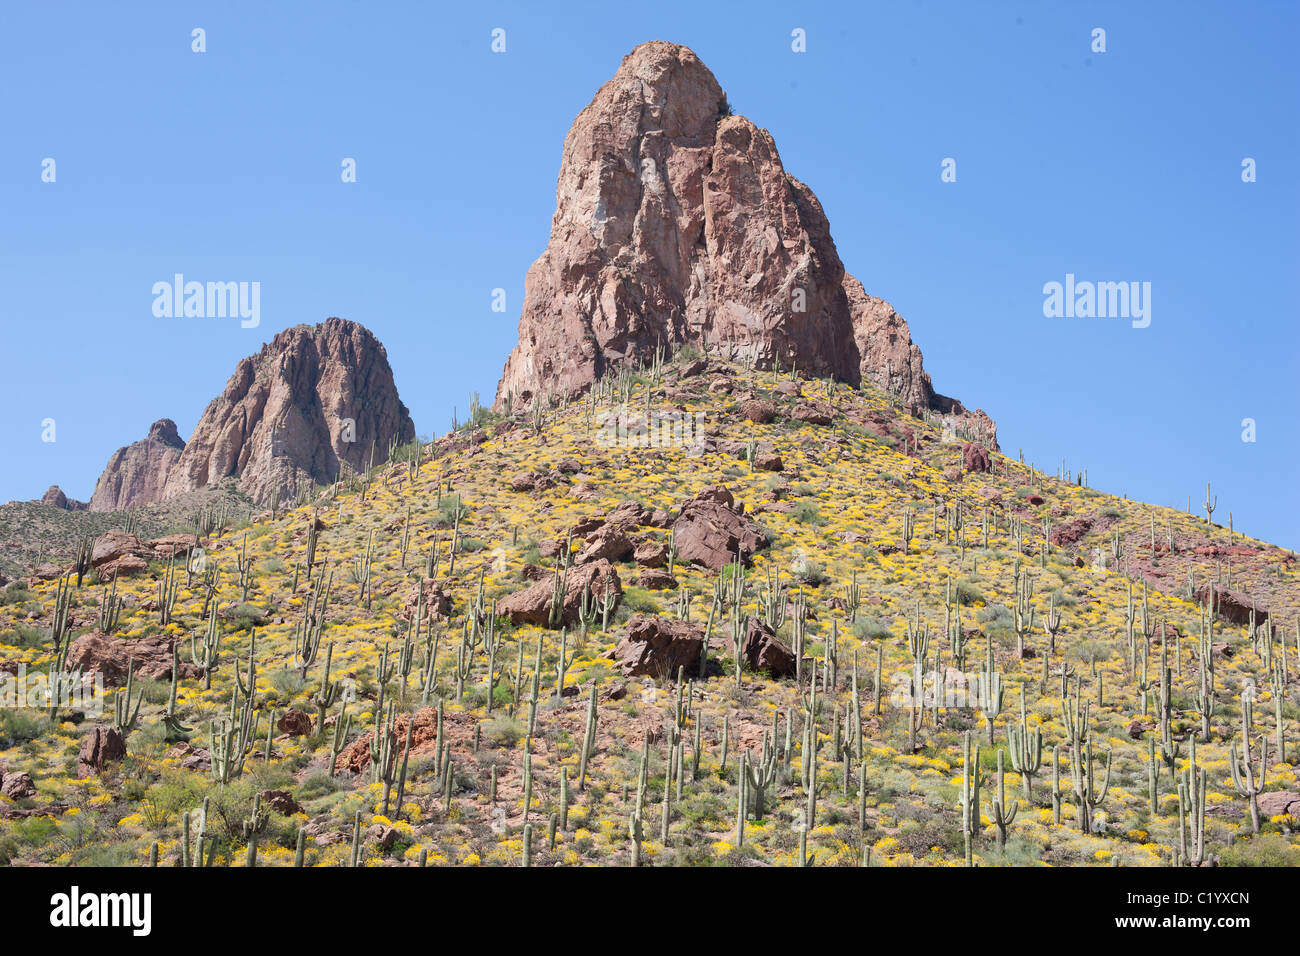 Der saguaro Kaktus ist die Quintessenz der Pflanze des amerikanischen Westens. Er kann Höhen bis zu 15 Metern erreichen. Maricopa County, Arizona, USA. Stockfoto